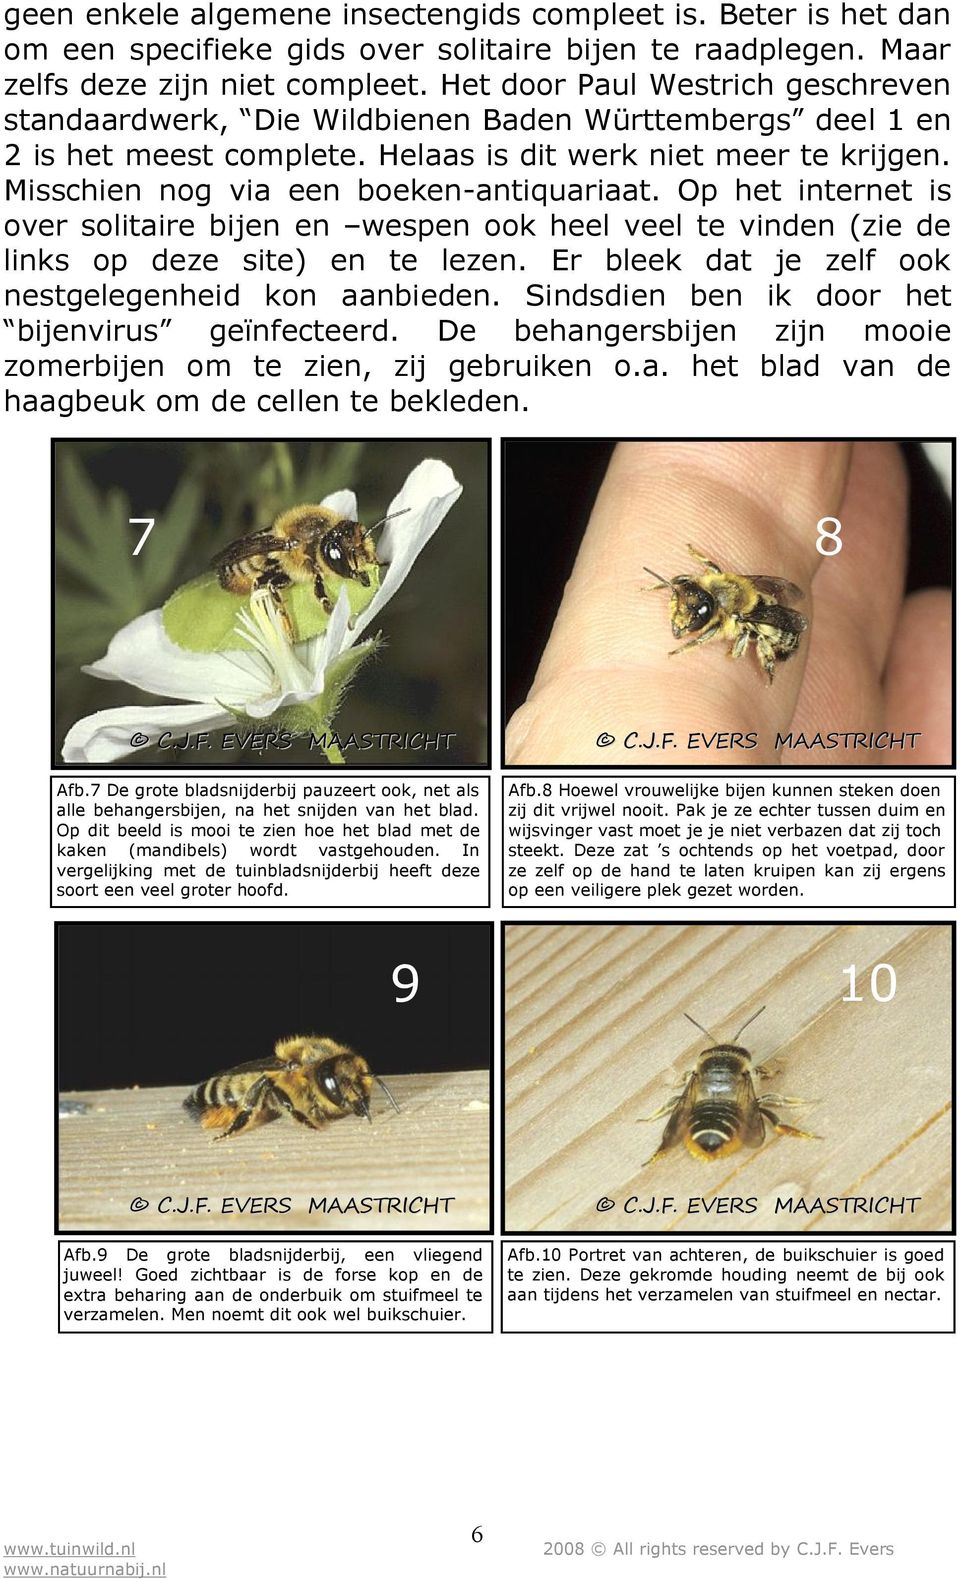 Op het internet is over solitaire bijen en wespen ook heel veel te vinden (zie de links op deze site) en te lezen. Er bleek dat je zelf ook nestgelegenheid kon aanbieden.